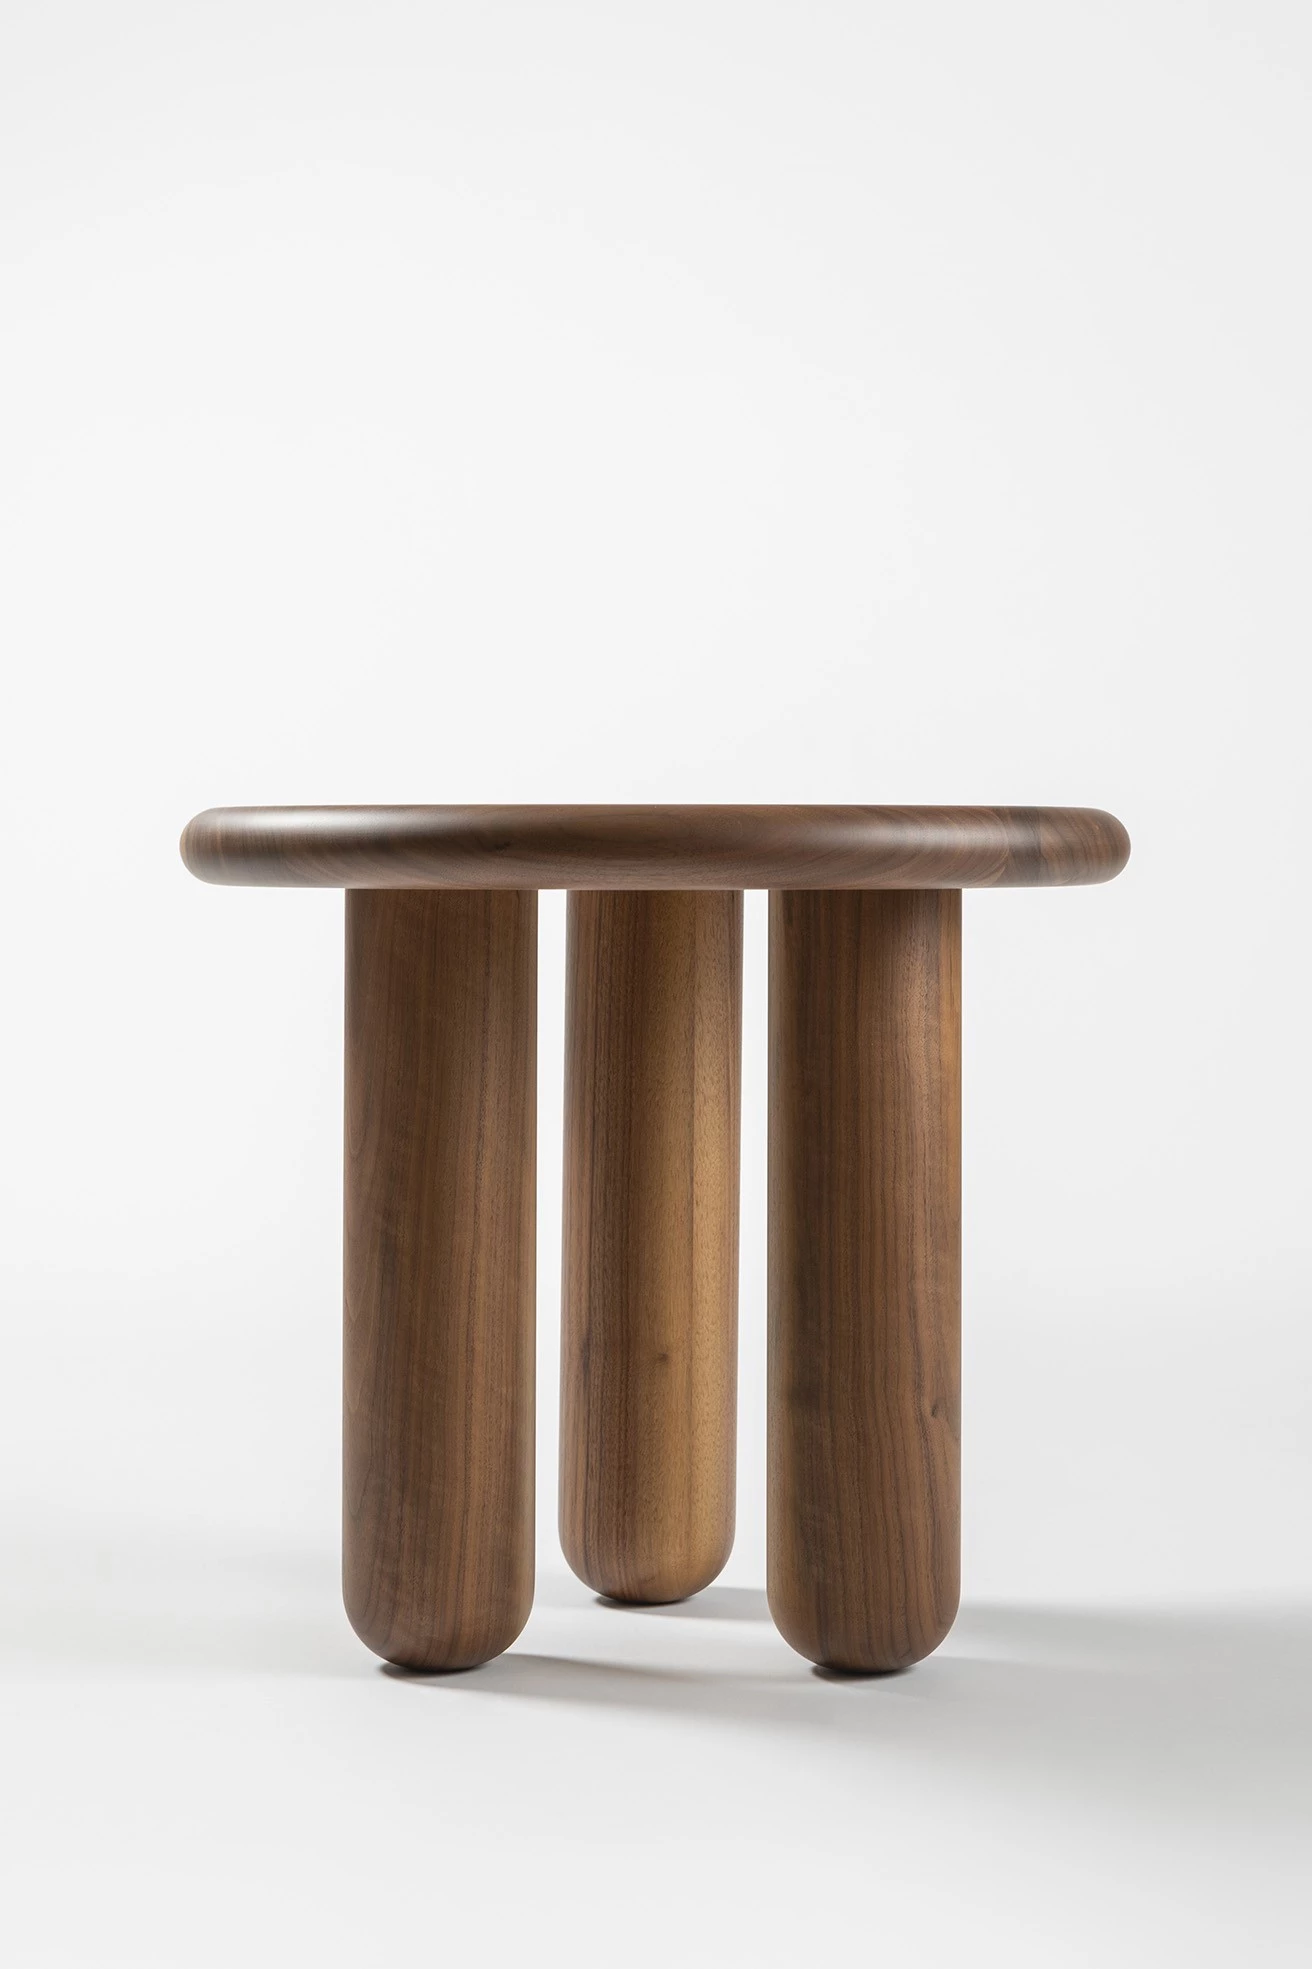 Monkey side table  - Jaime Hayon - Side table - Galerie kreo